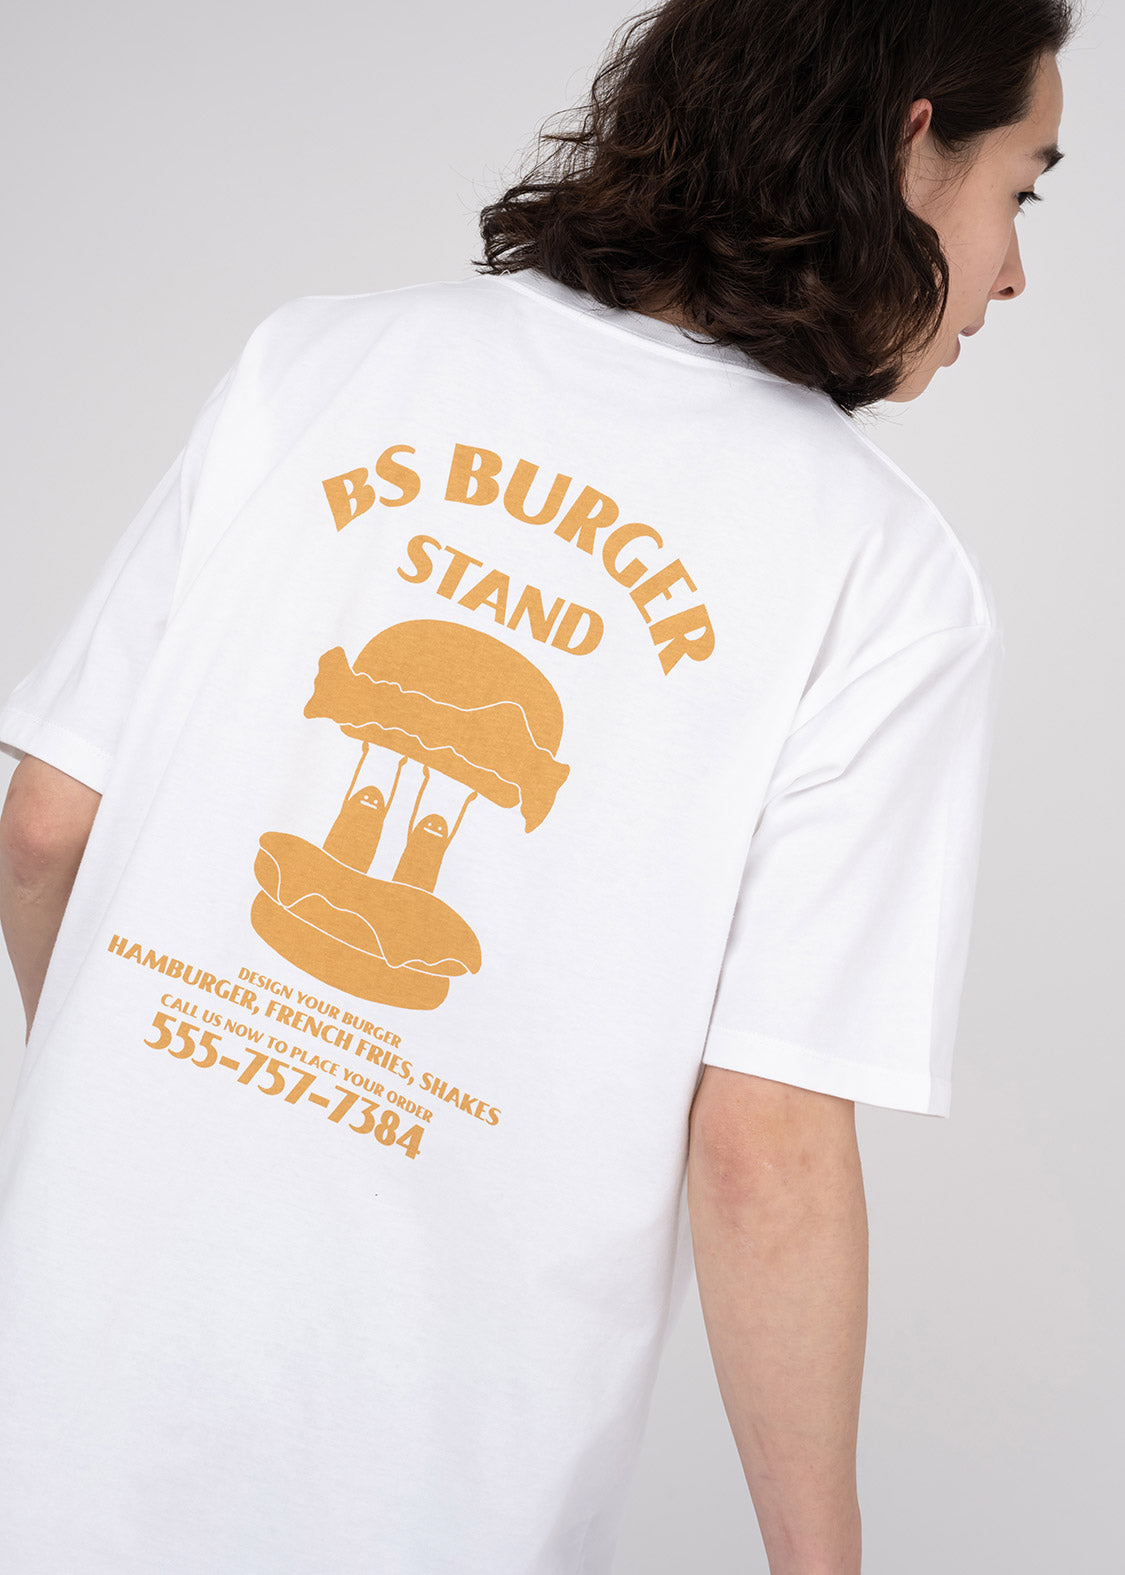 BS Burger Shop 2